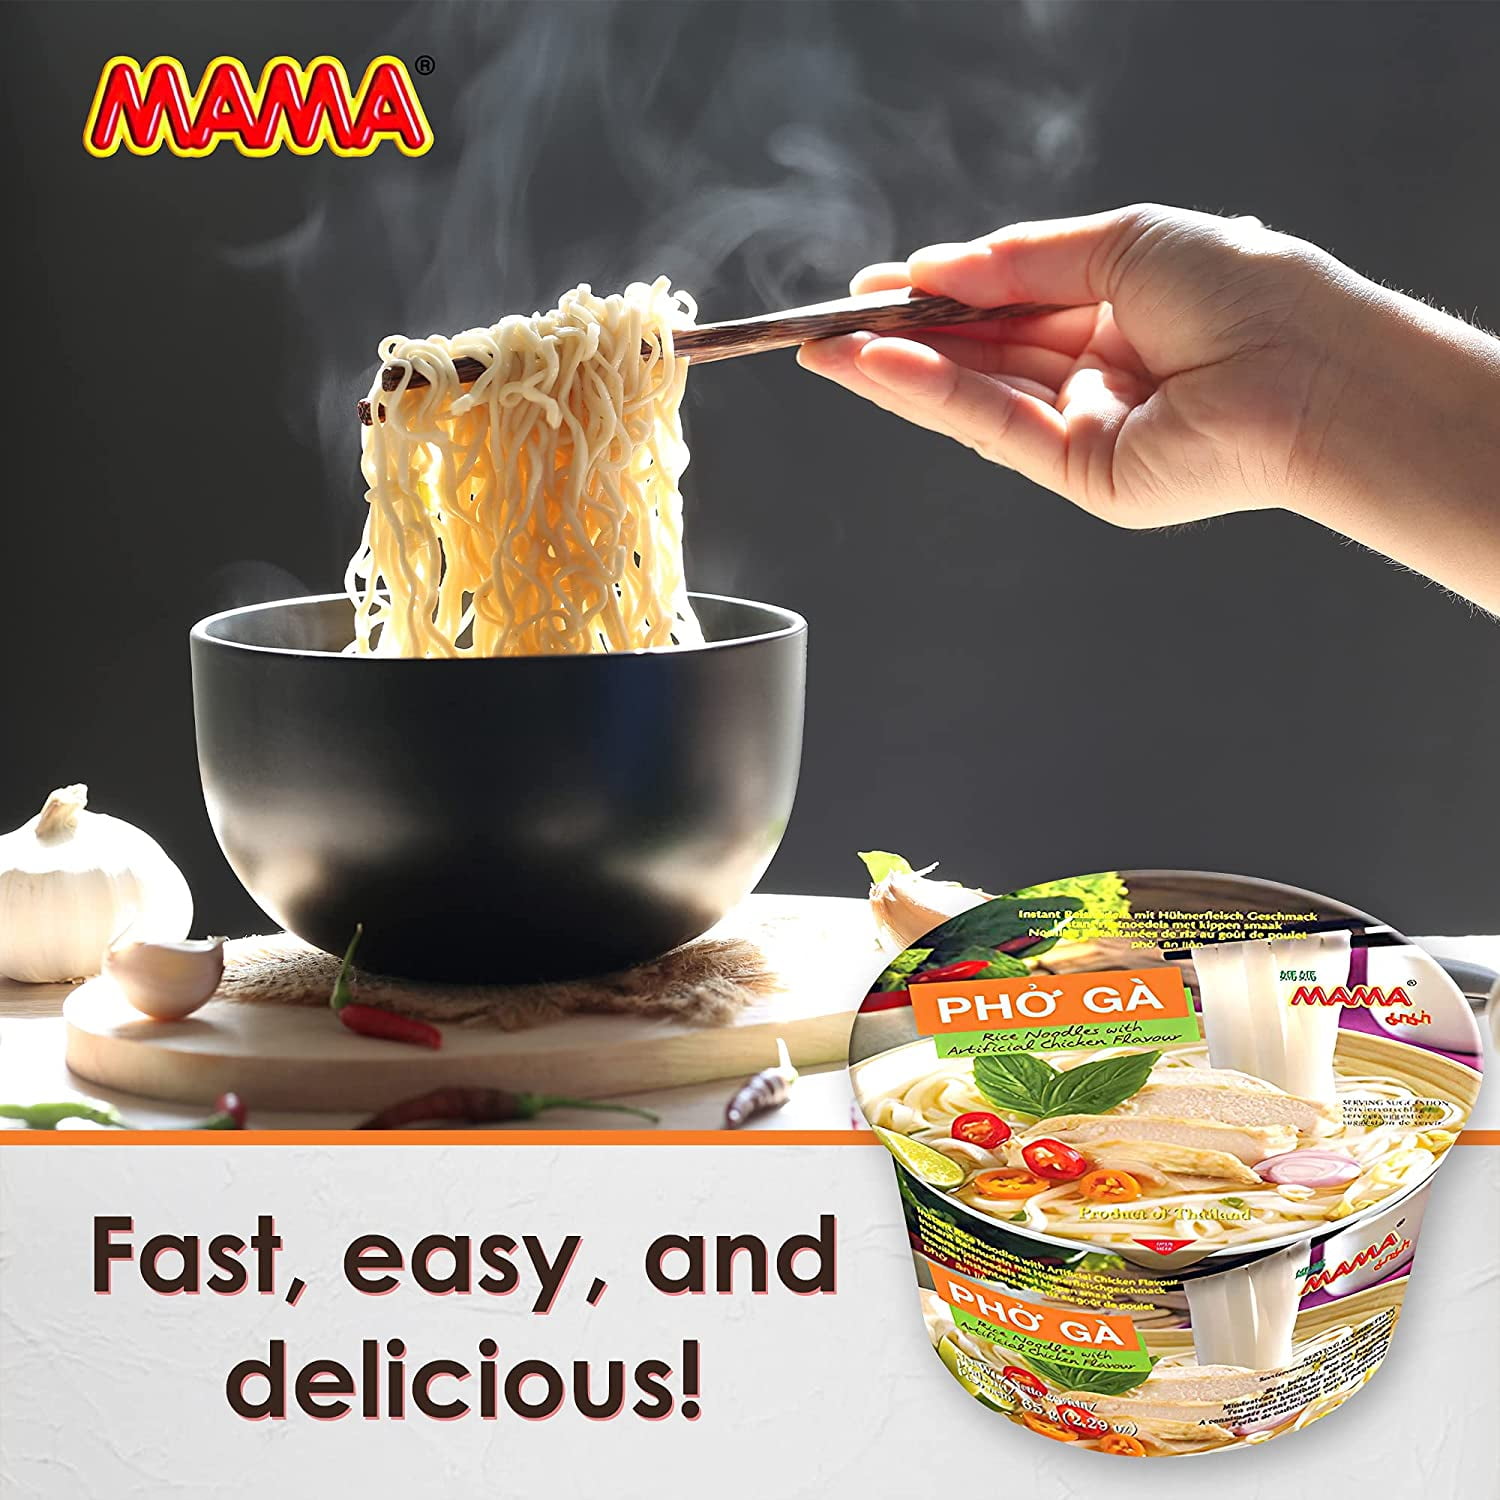 Mama Instant Noodles Cup Lek Shrimp Tom Yum Flavour Thailand